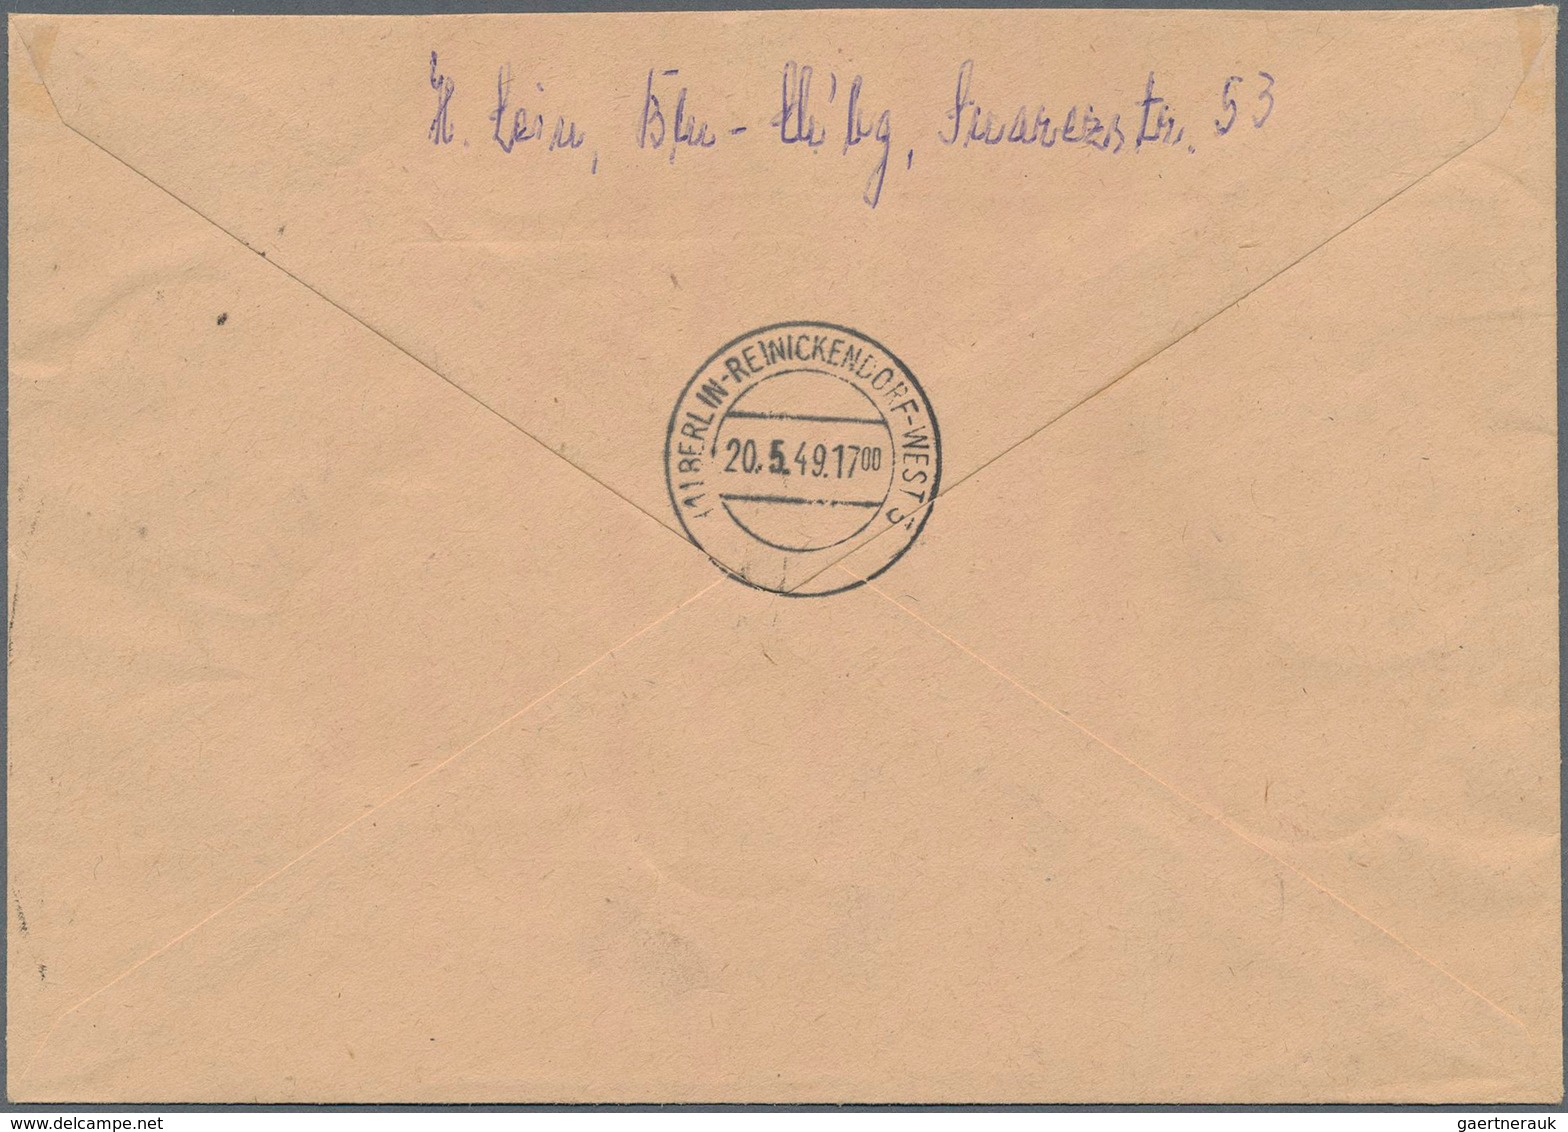 Berlin - Postschnelldienst: 8, 10 U. 20 Pf. Rotaufdruck Mit 16 Pf. Stephan Sowie 6 U. 40 Pf. Bauten - Briefe U. Dokumente